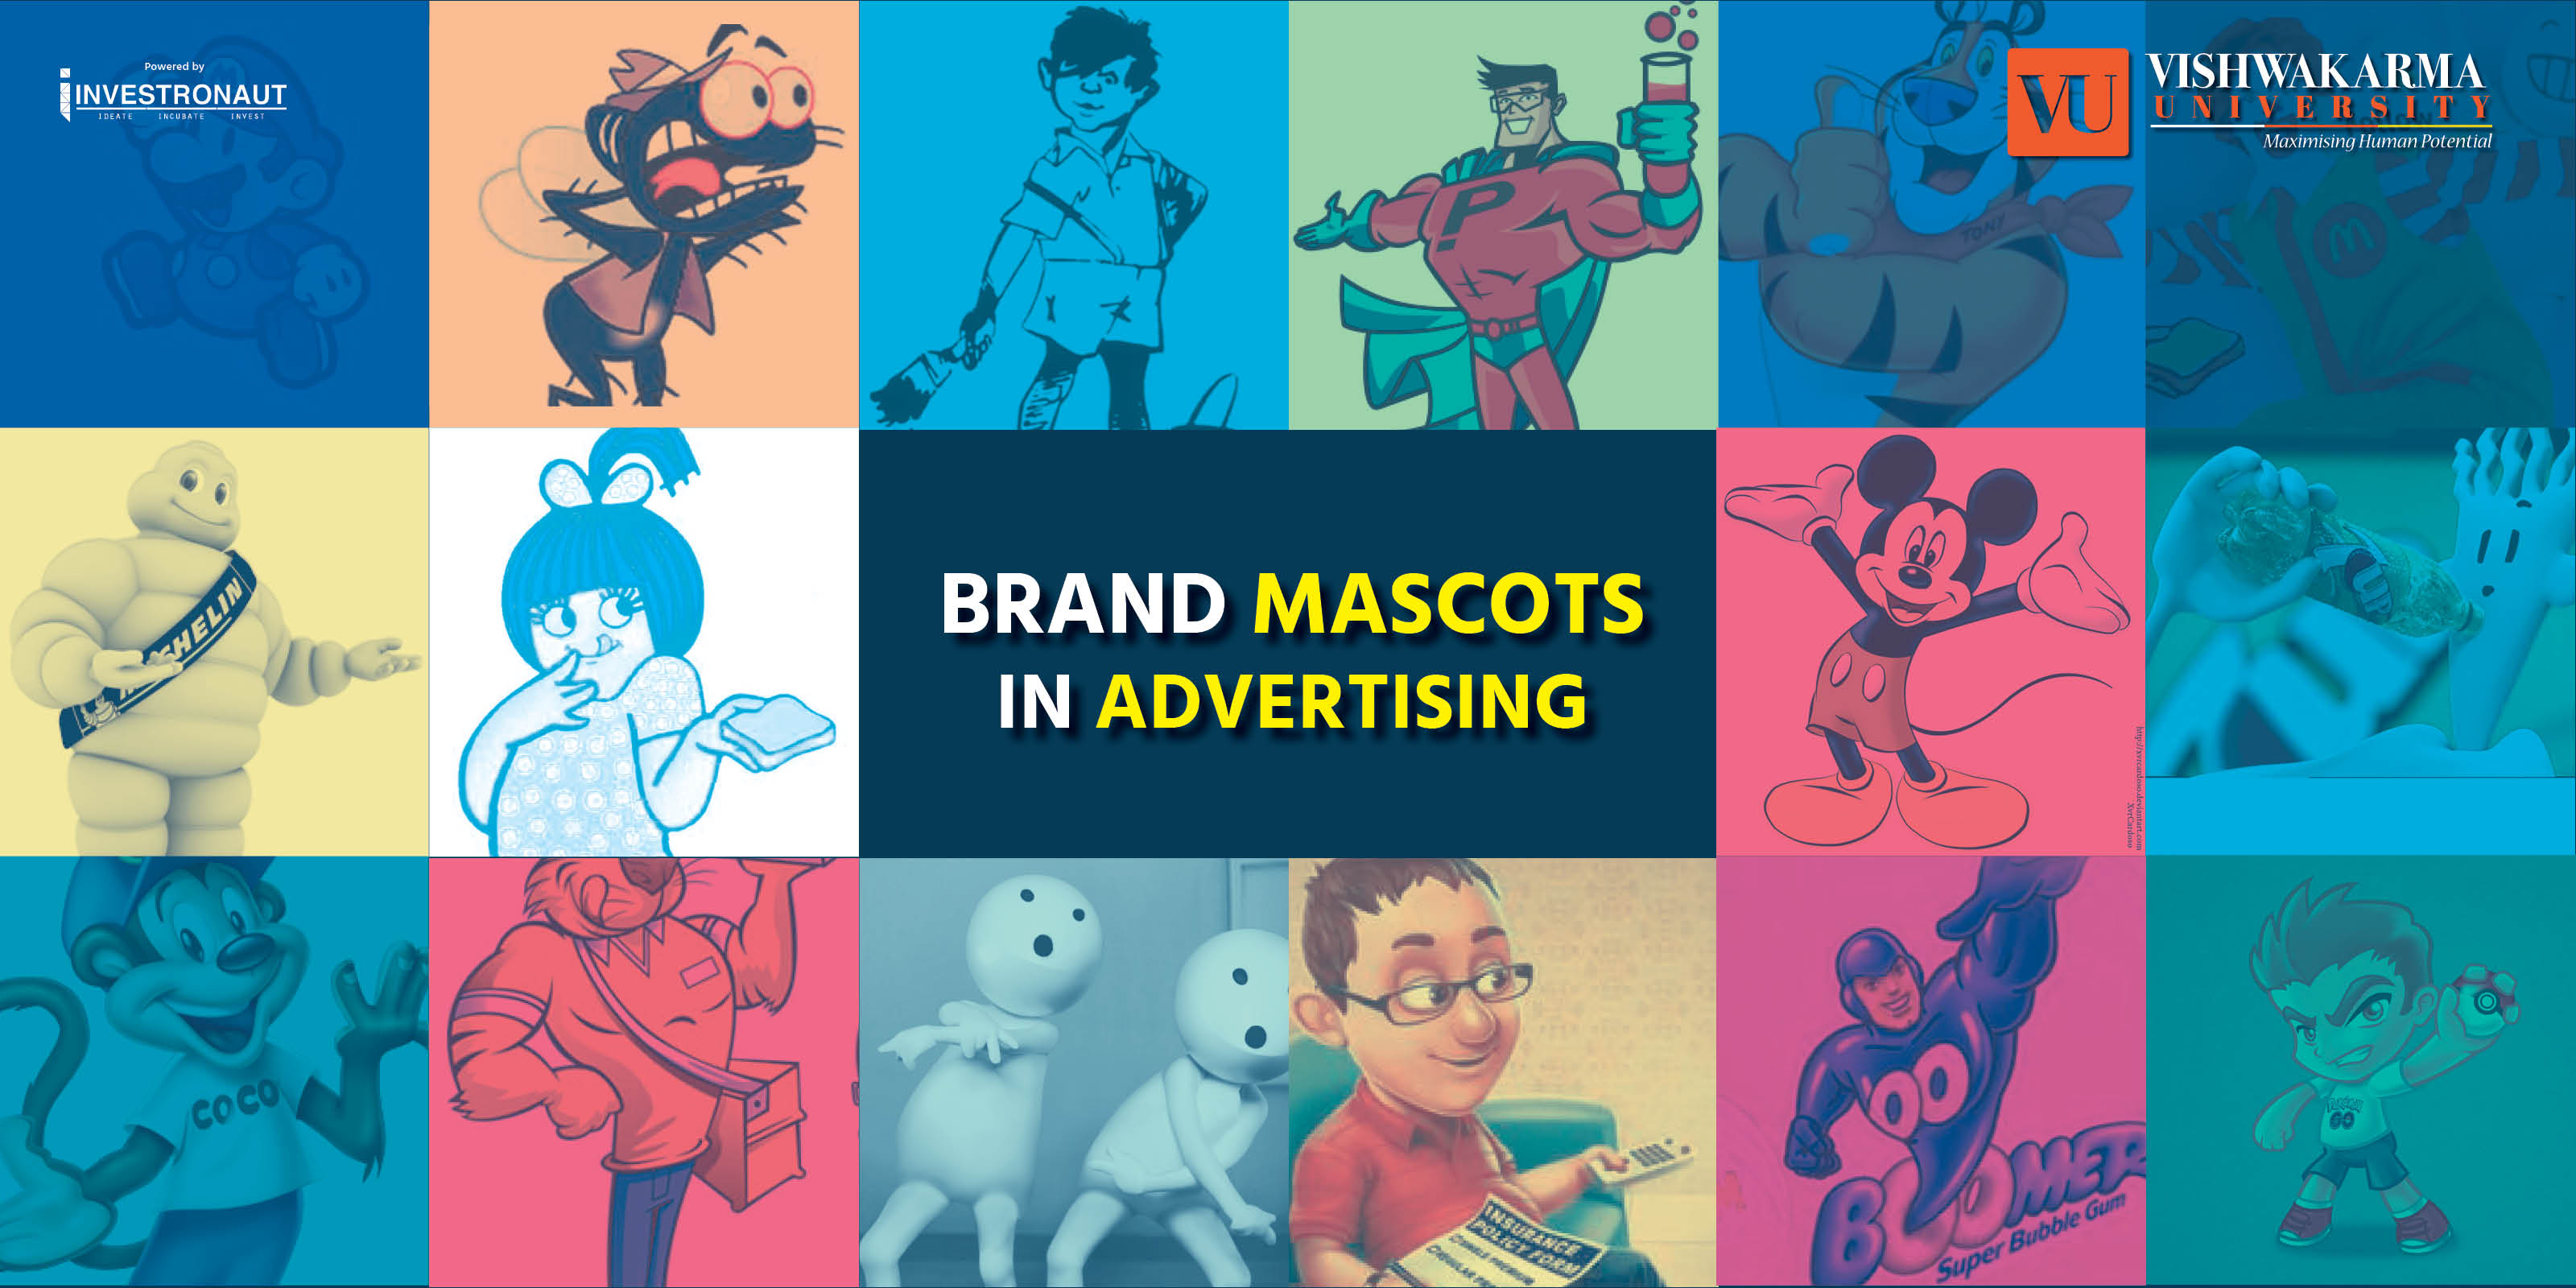 Linkedlin Post For Brand mascots in Advertising 1